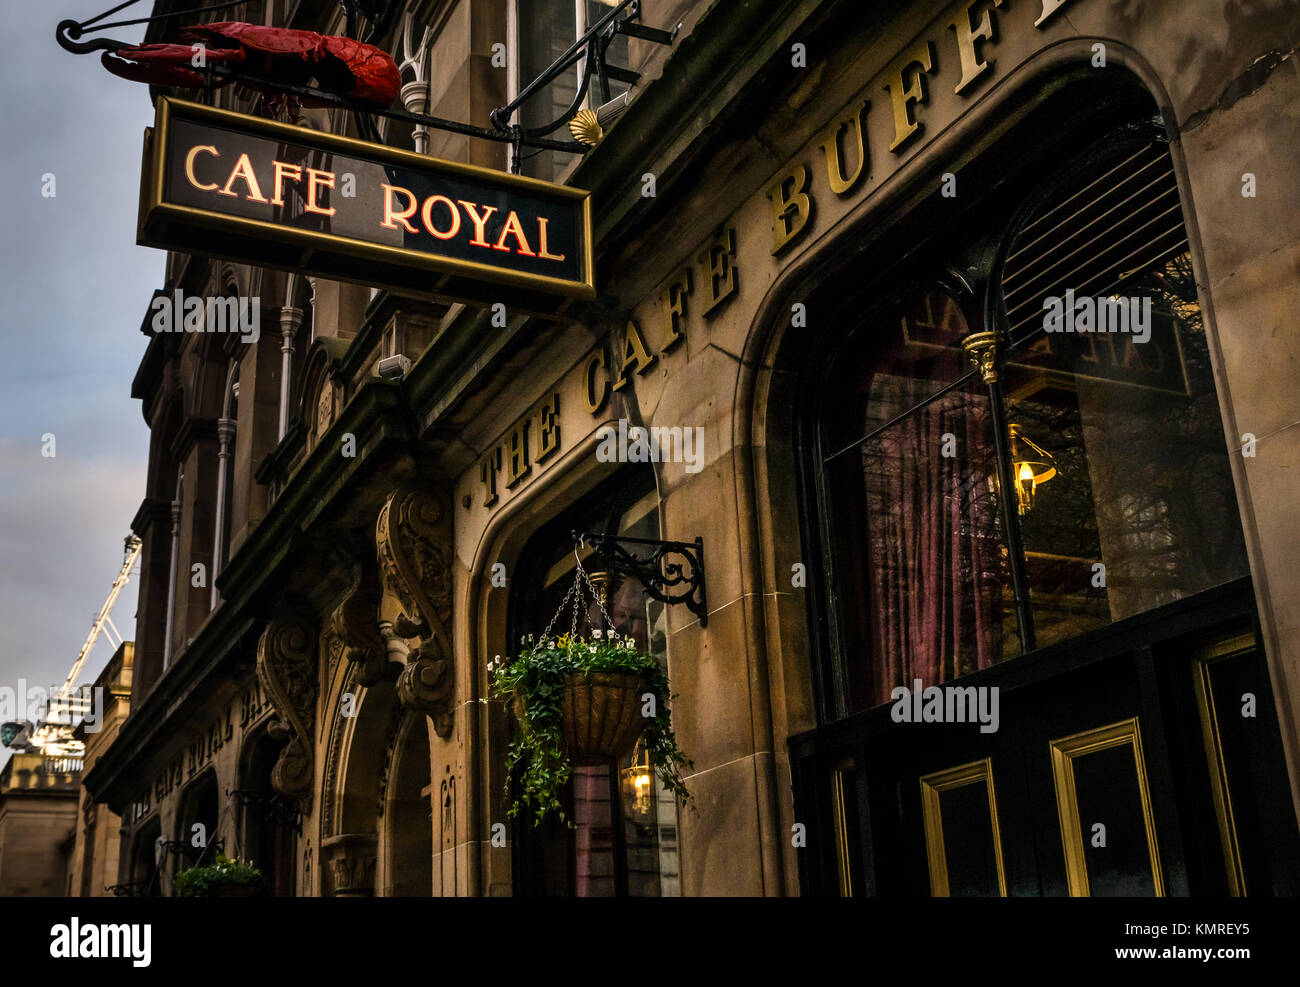 Cafe Royal Bar, berühmter viktorianischer Pub, Edinburgh City Centre, Schottland, UK, Mit Namensschild und Hummer-Seafood-Schild Stockfoto